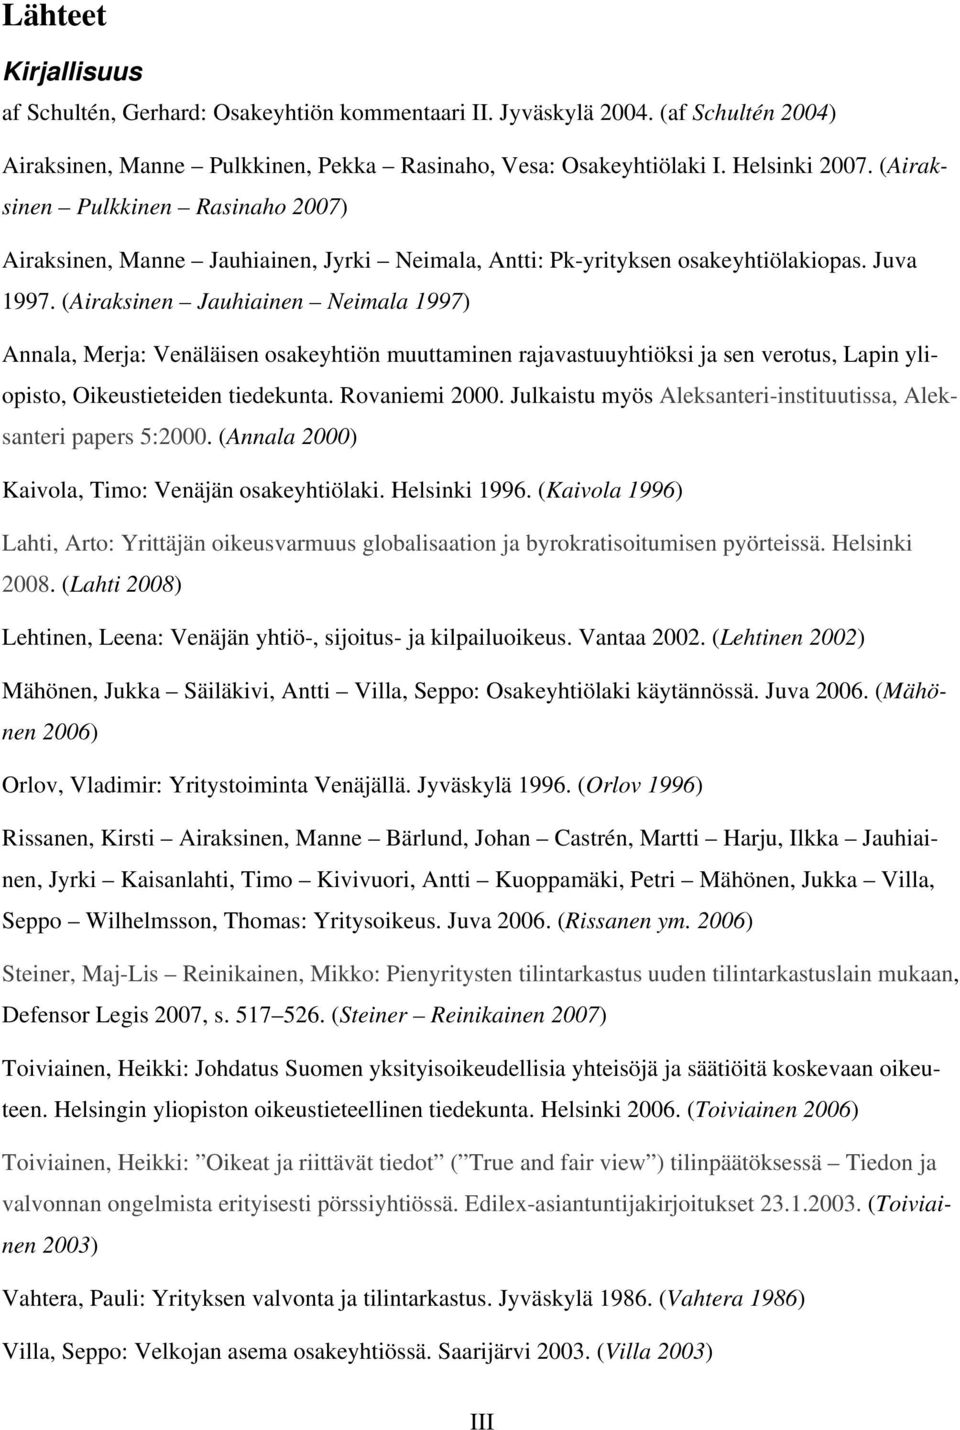 (Airaksinen Jauhiainen Neimala 1997) Annala, Merja: Venäläisen osakeyhtiön muuttaminen rajavastuuyhtiöksi ja sen verotus, Lapin yliopisto, Oikeustieteiden tiedekunta. Rovaniemi 2000.